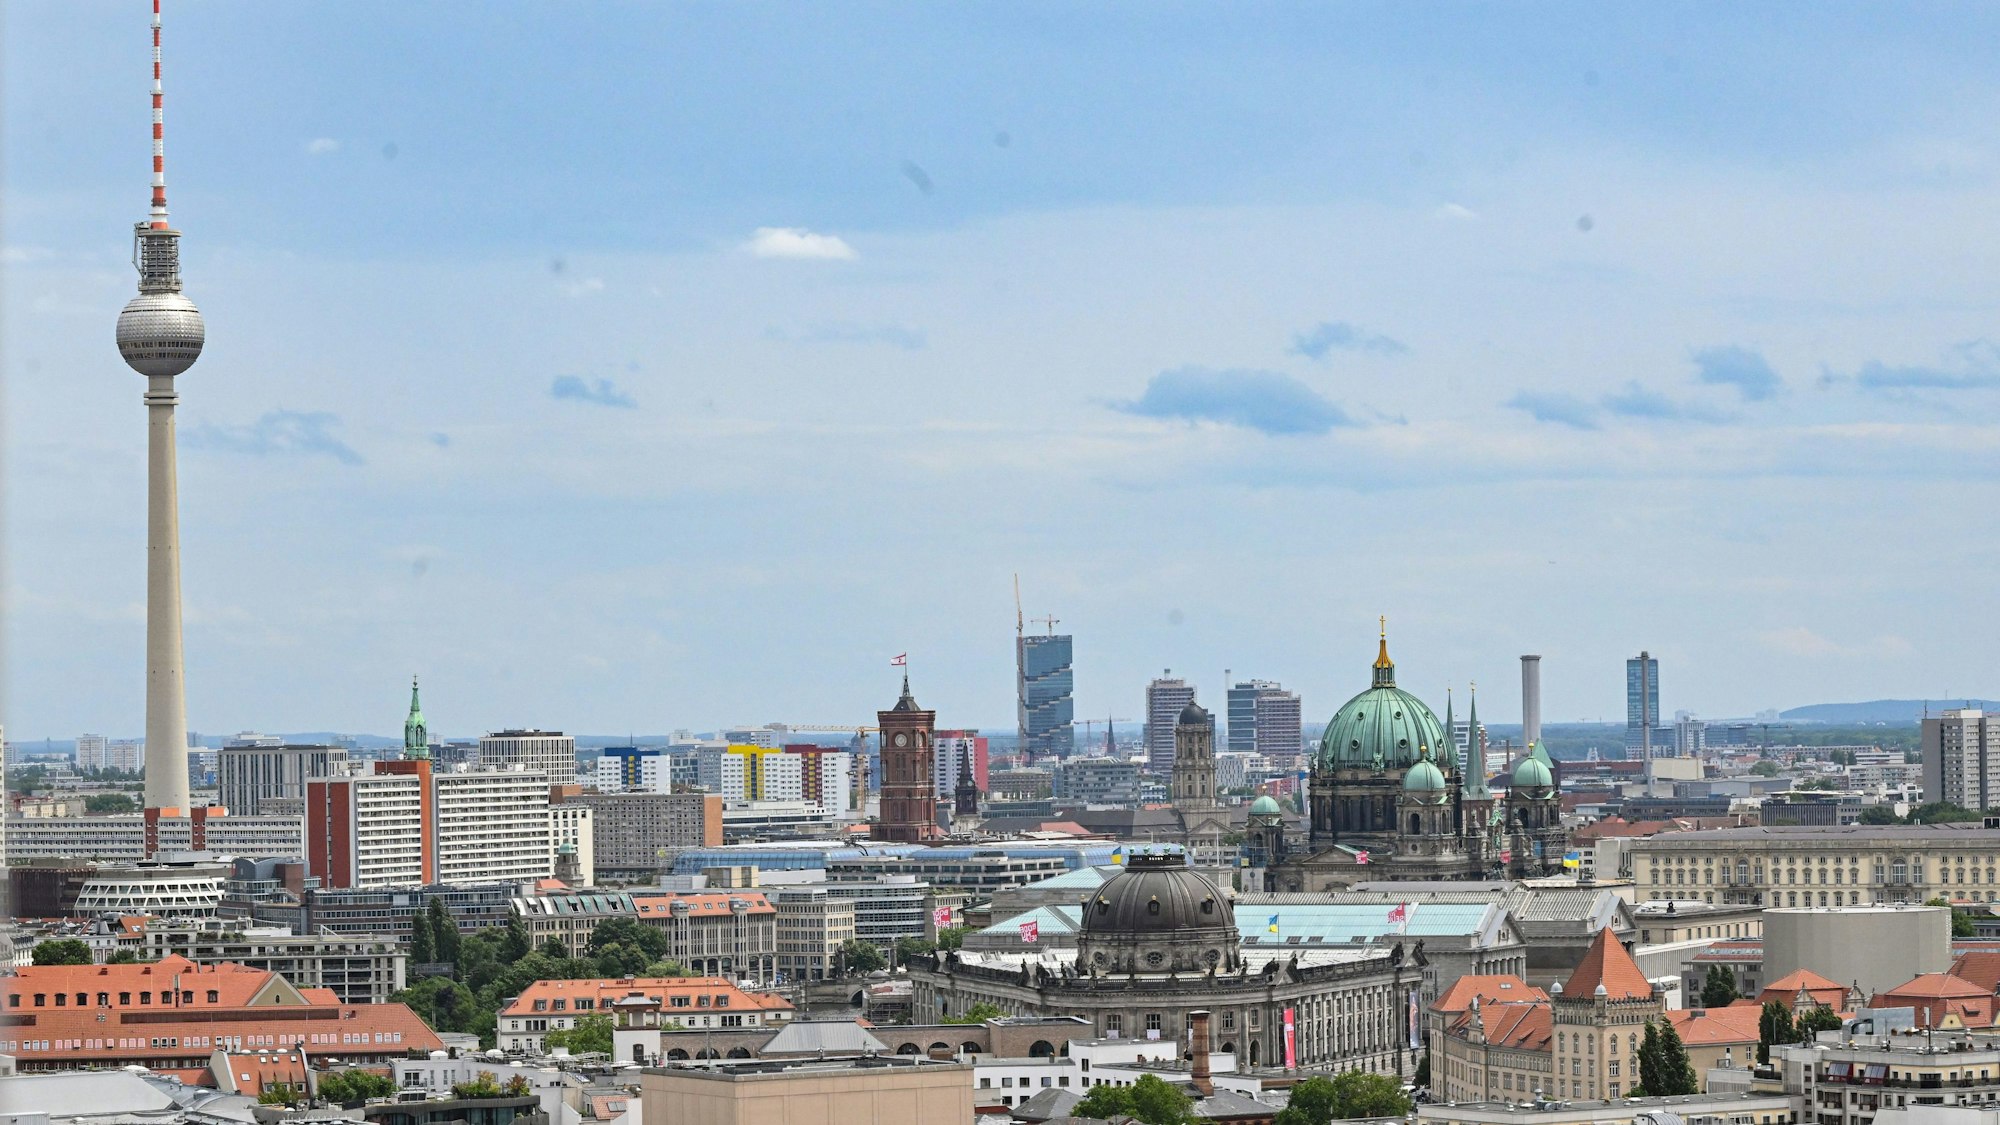 PRODUKTION - 05.07.2023, Berlin: Luftaufnahme mit Fernsehturm und Berliner Dom.  (zu dpa-KORR Fernsehtürme in Deutschland - Ausblick ist Ausnahme) Foto: Britta Pedersen/dpa +++ dpa-Bildfunk +++